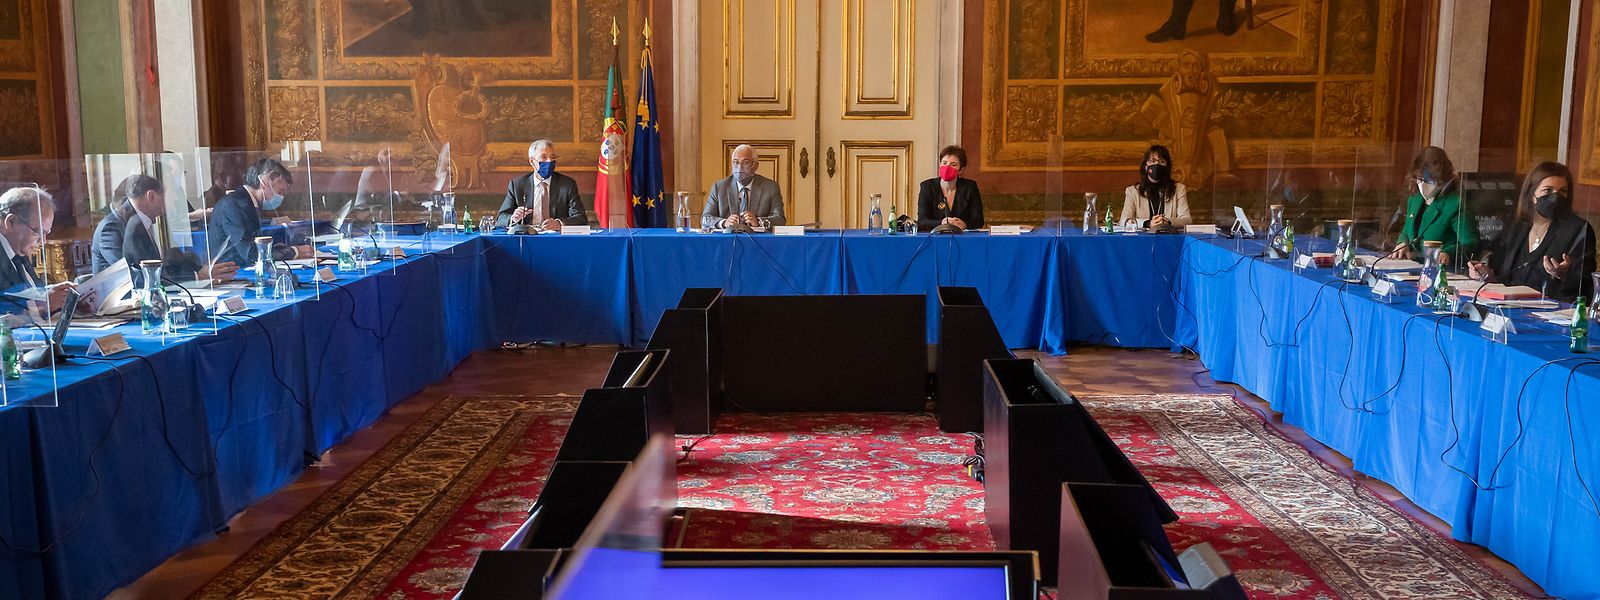 O primeiro-ministro, António Costa (C-E), ladeado pela ministra da Presidência, Mariana Vieira da Silva (C-D), preside à primeira reunião do Conselho de Ministros do XXIII Governo, no Palácio da Ajuda, em Lisboa, 31 de março de 2022. 